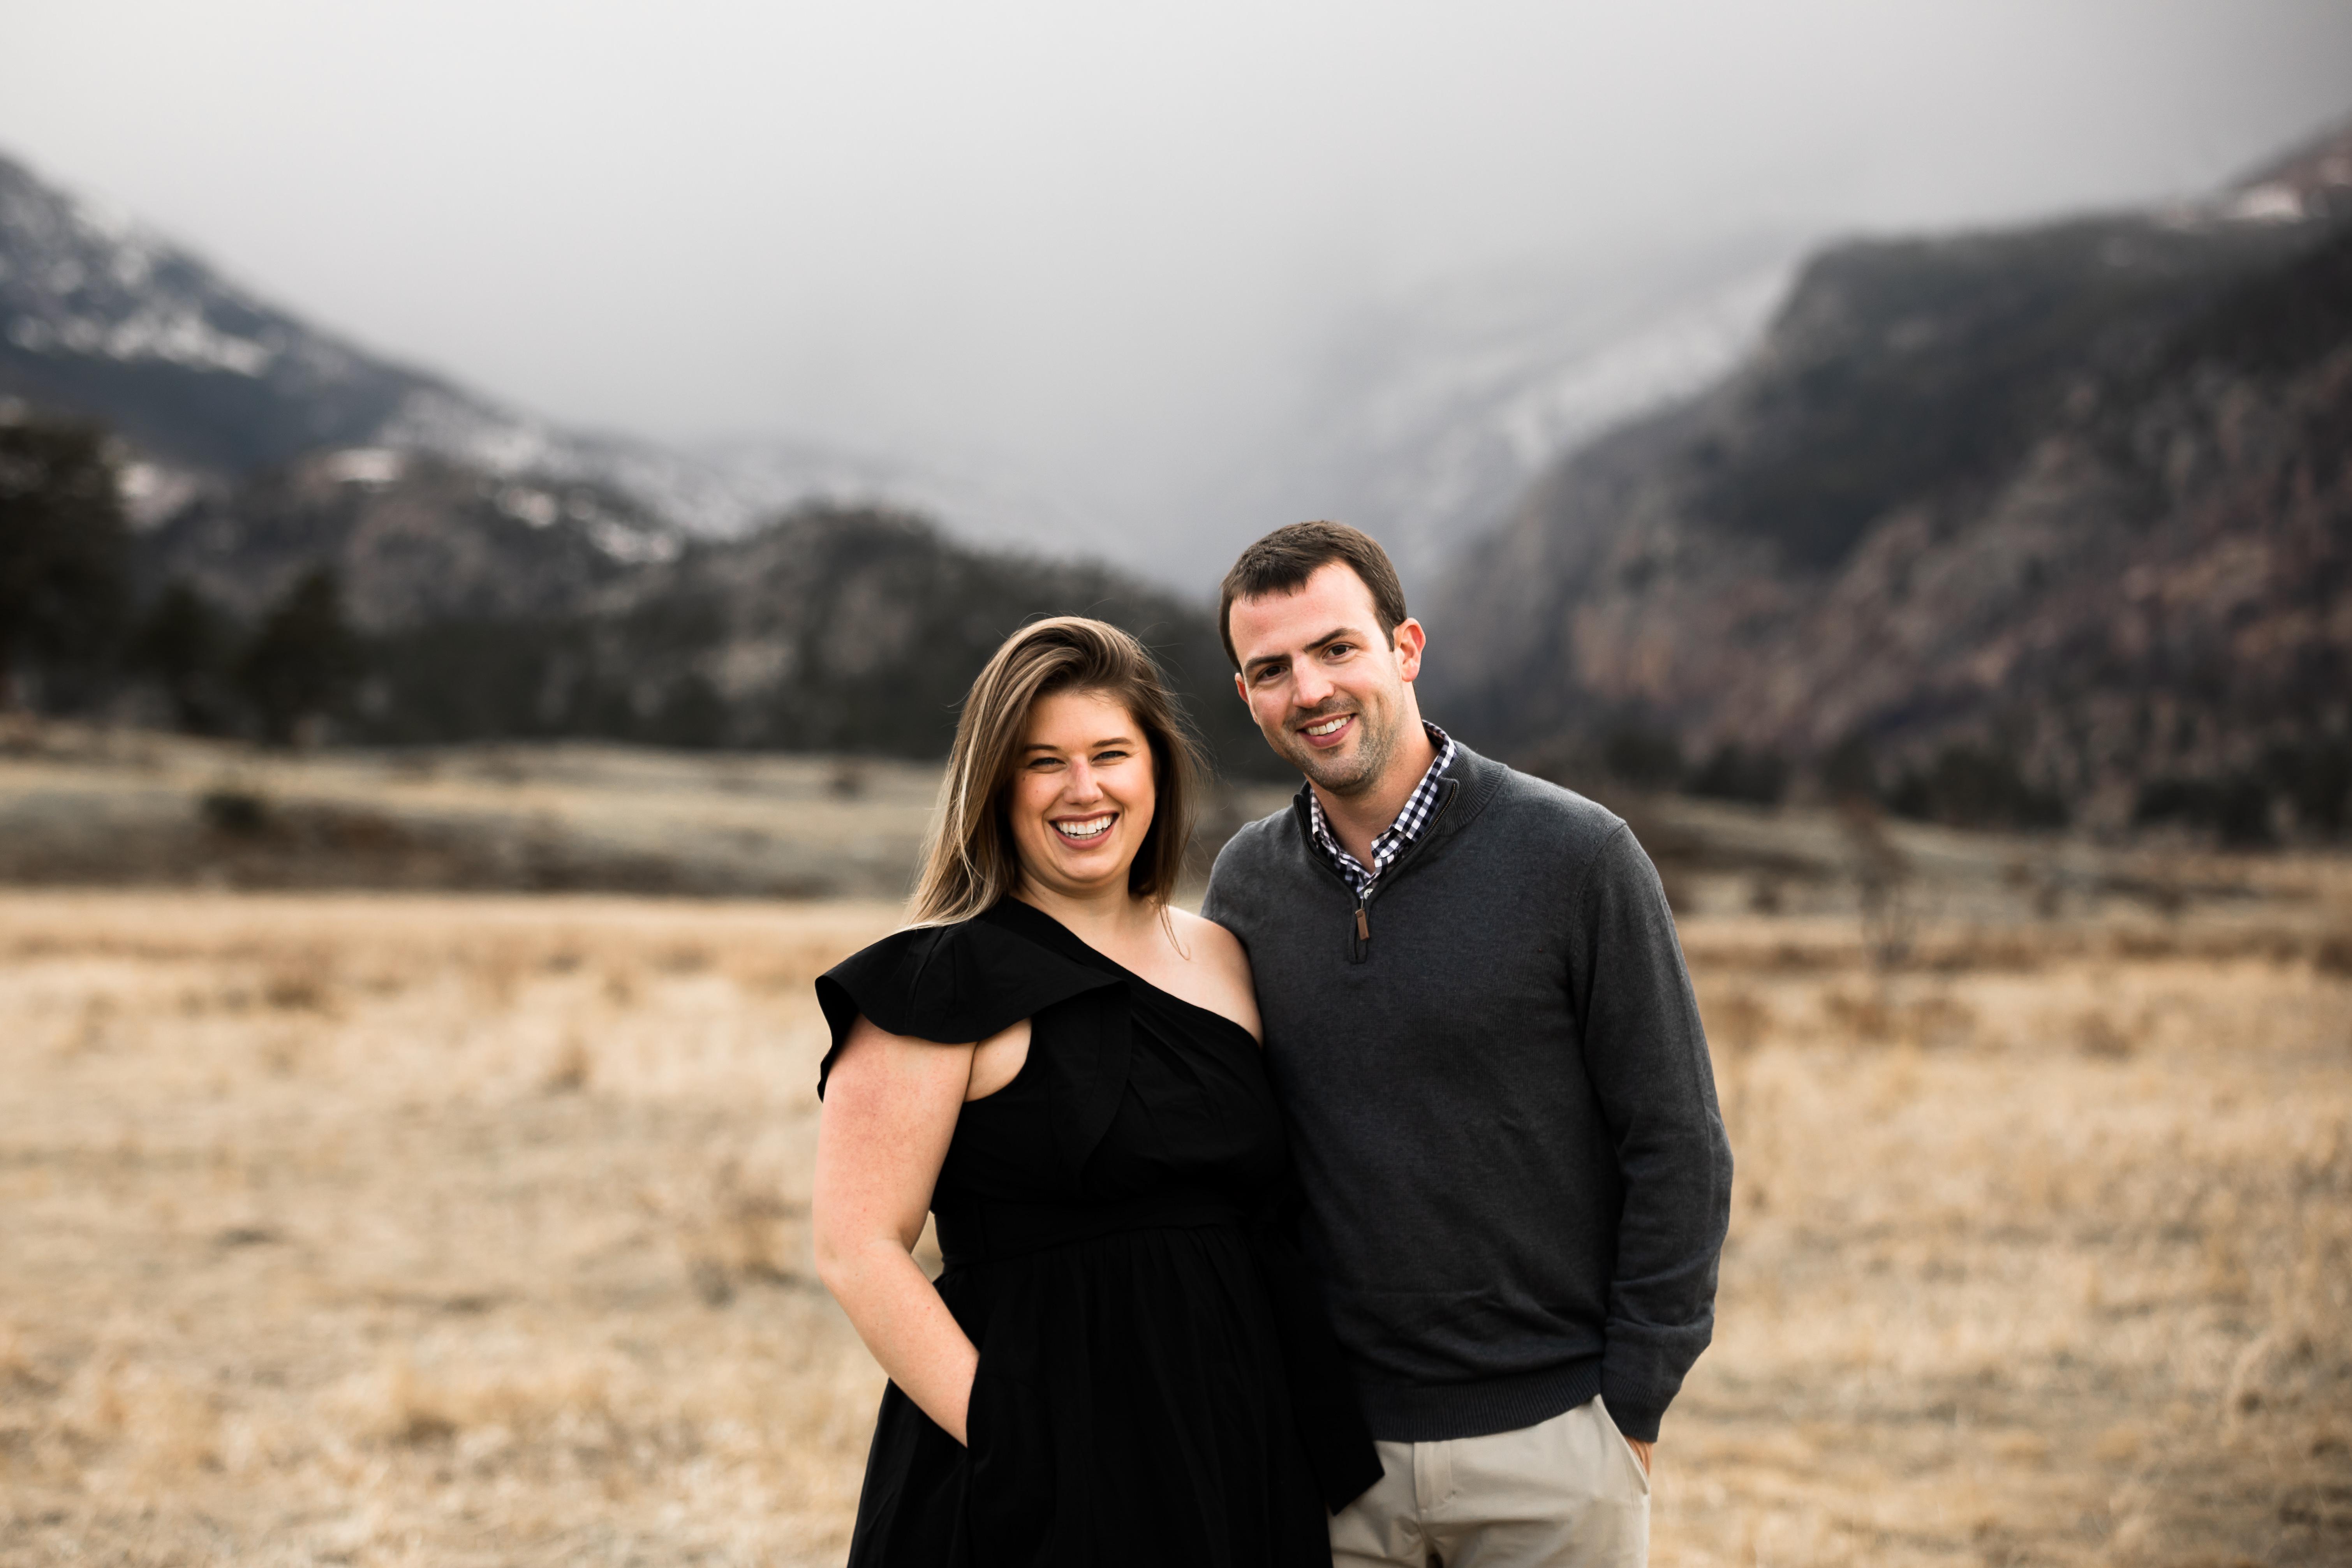 The Wedding Website of Mackenzie Smith and Zach Fournier